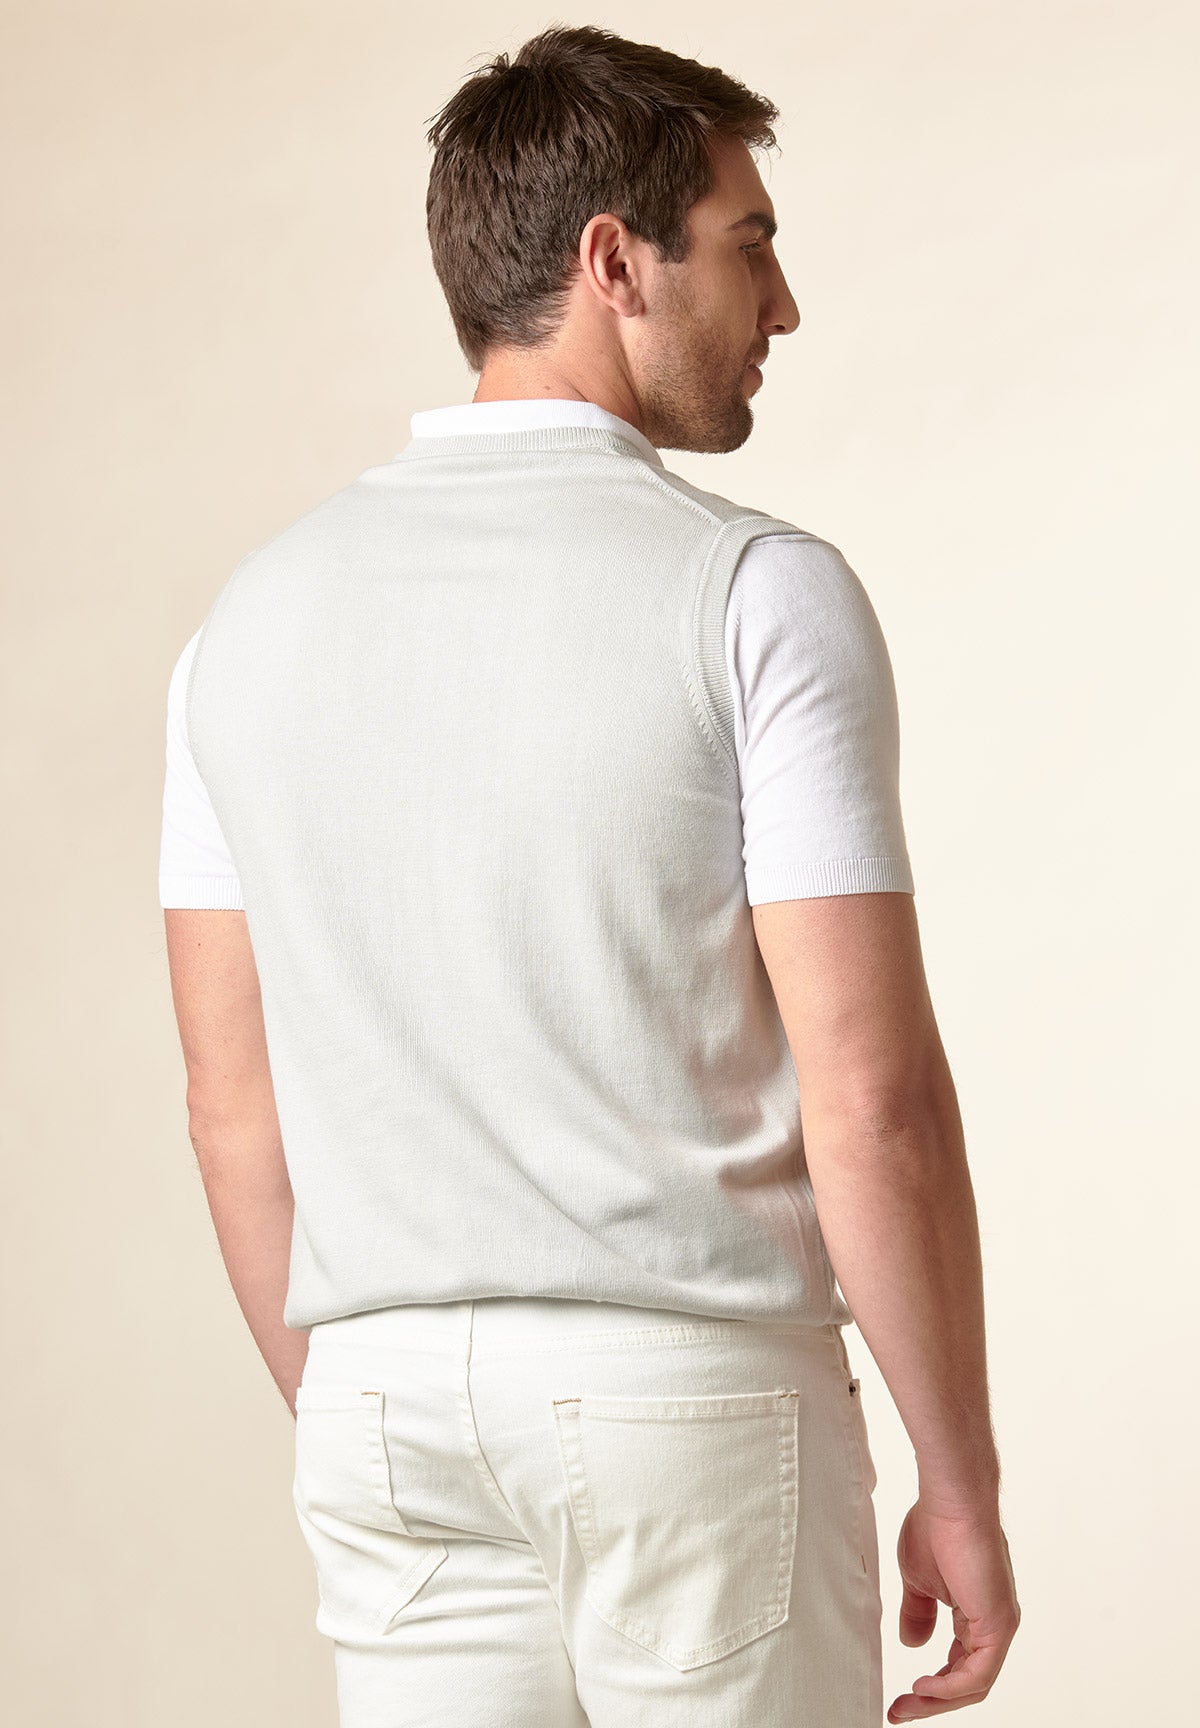 Light gray cotton v-neck vest